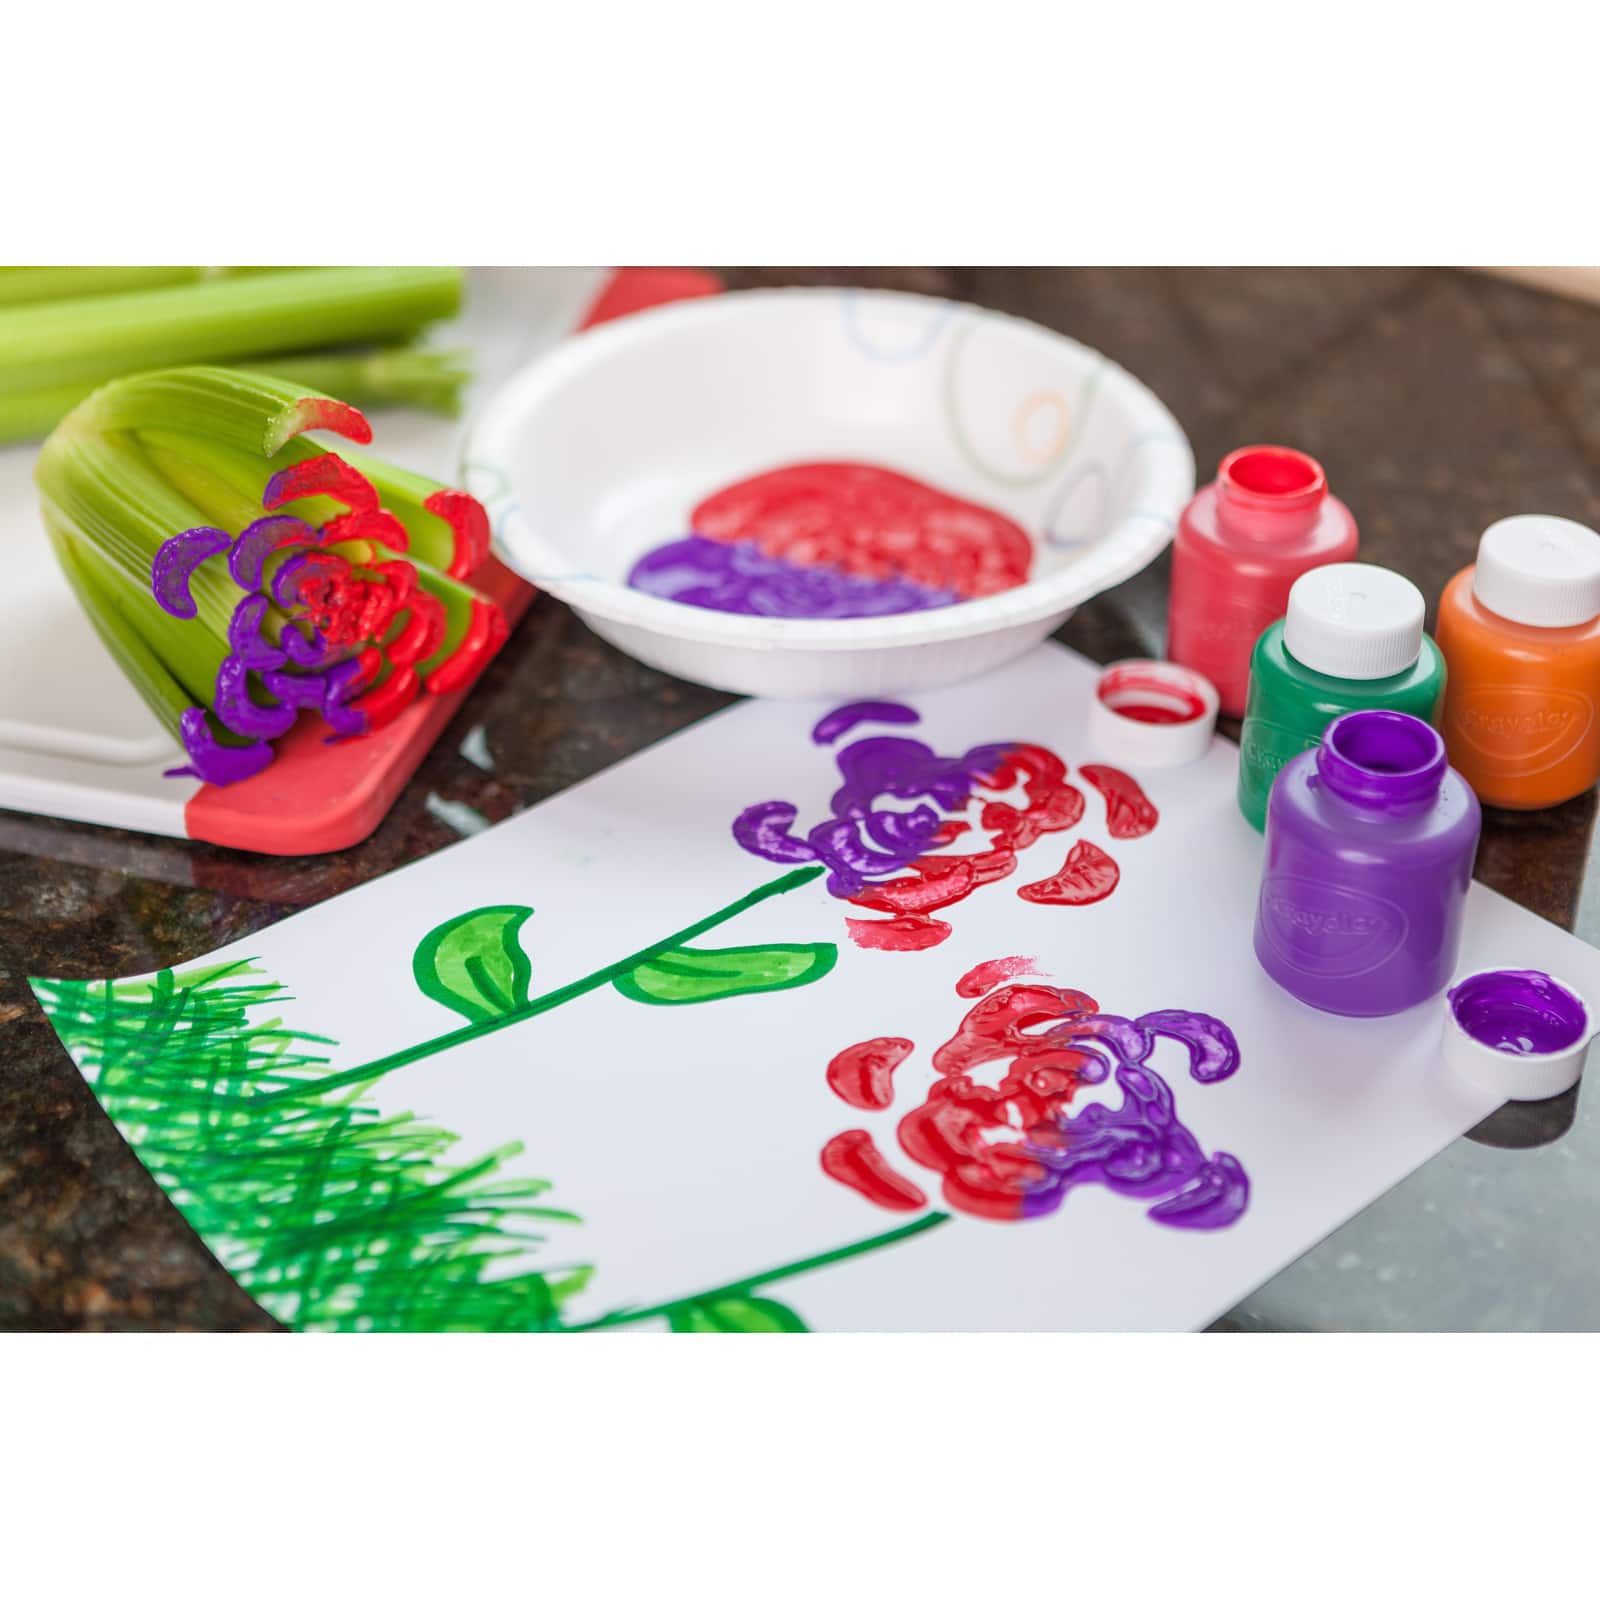 Crayola Washable Kids Paint Set, 10ct.